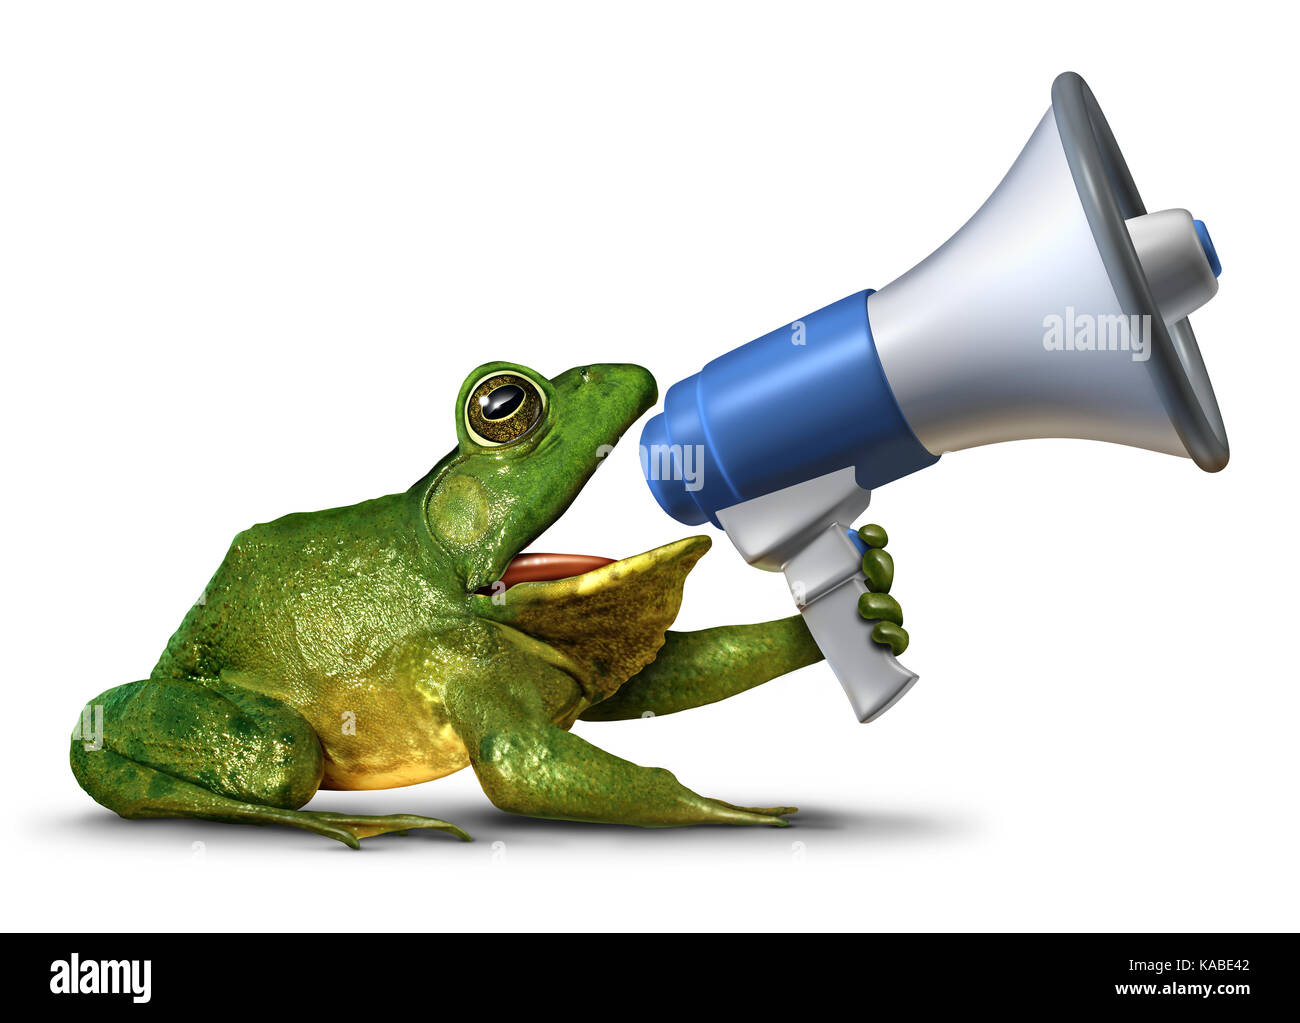 Frog annunciatore come un verde anfibio tenendo un megafono o bullhorn urlando un messaggio come una promozione pubblicitaria e di marketing. Foto Stock